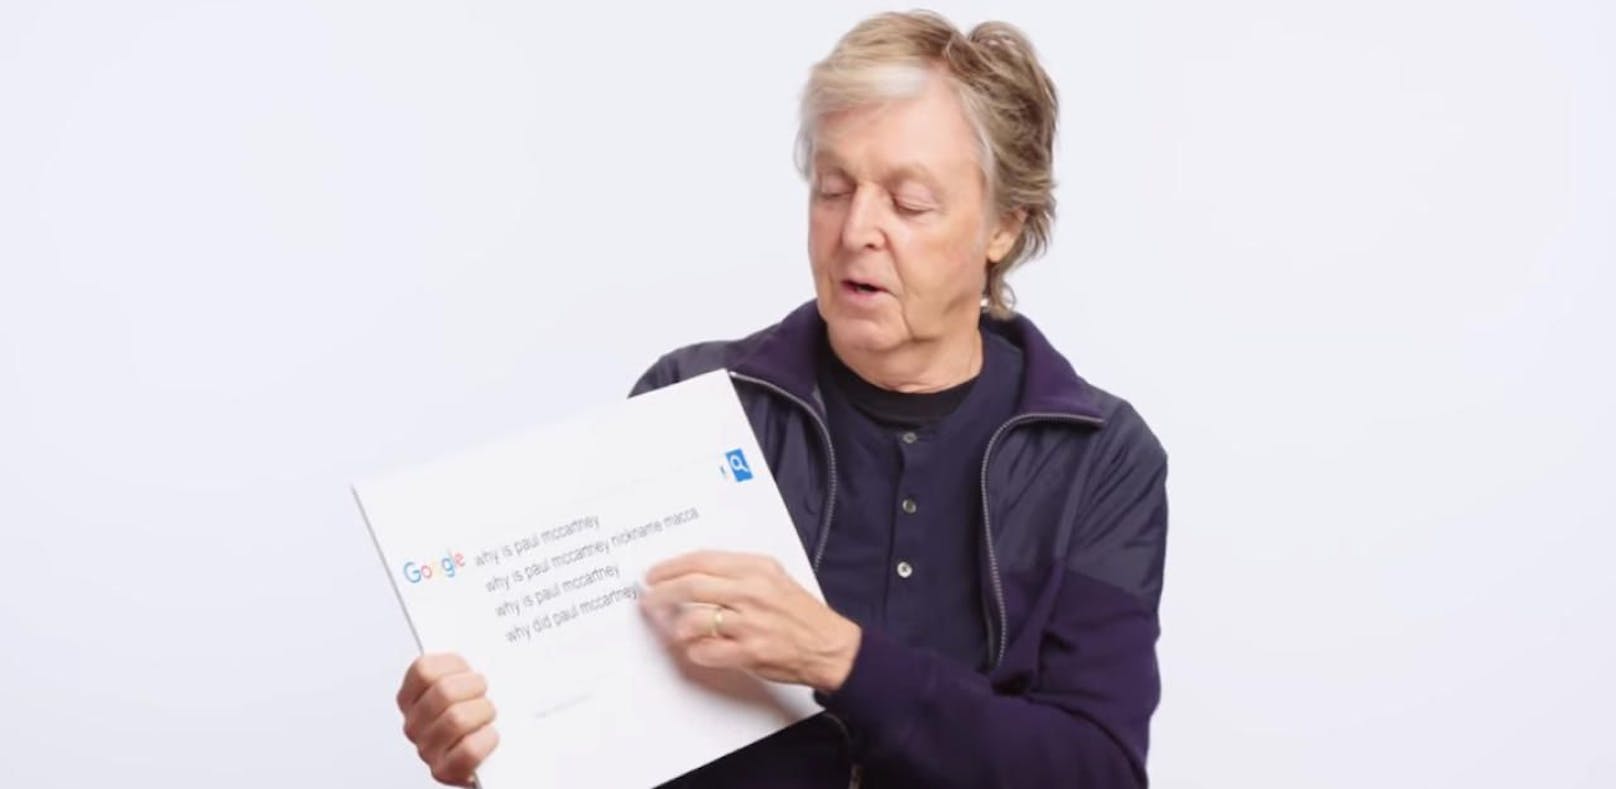 McCartney beantwortet Google-Suchvorschläge